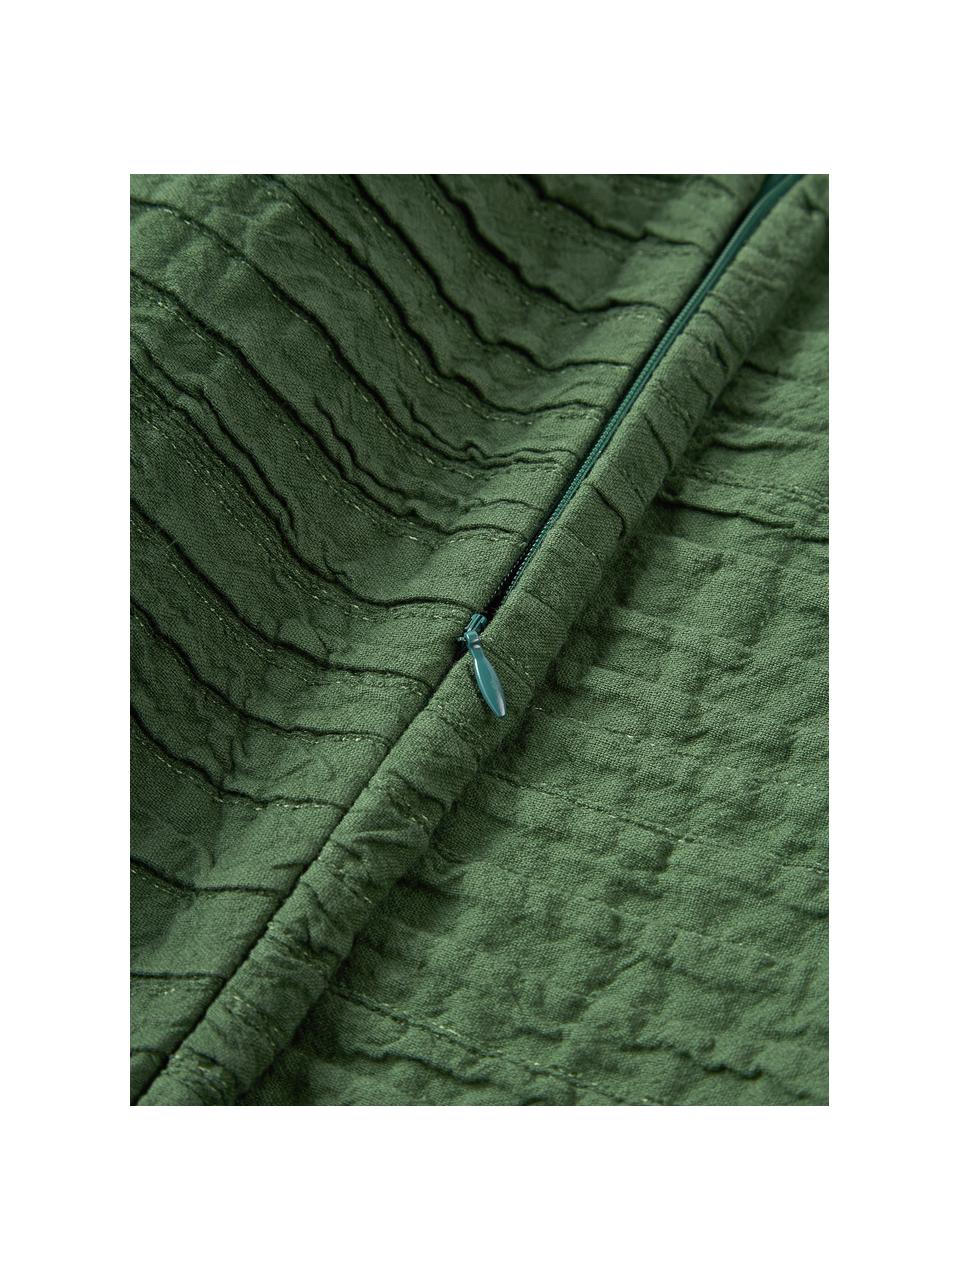 Housse de coussin en coton avec motif plissé Artemis, 99 % coton, 1 % polyester, Vert foncé, larg. 30 x long. 50 cm